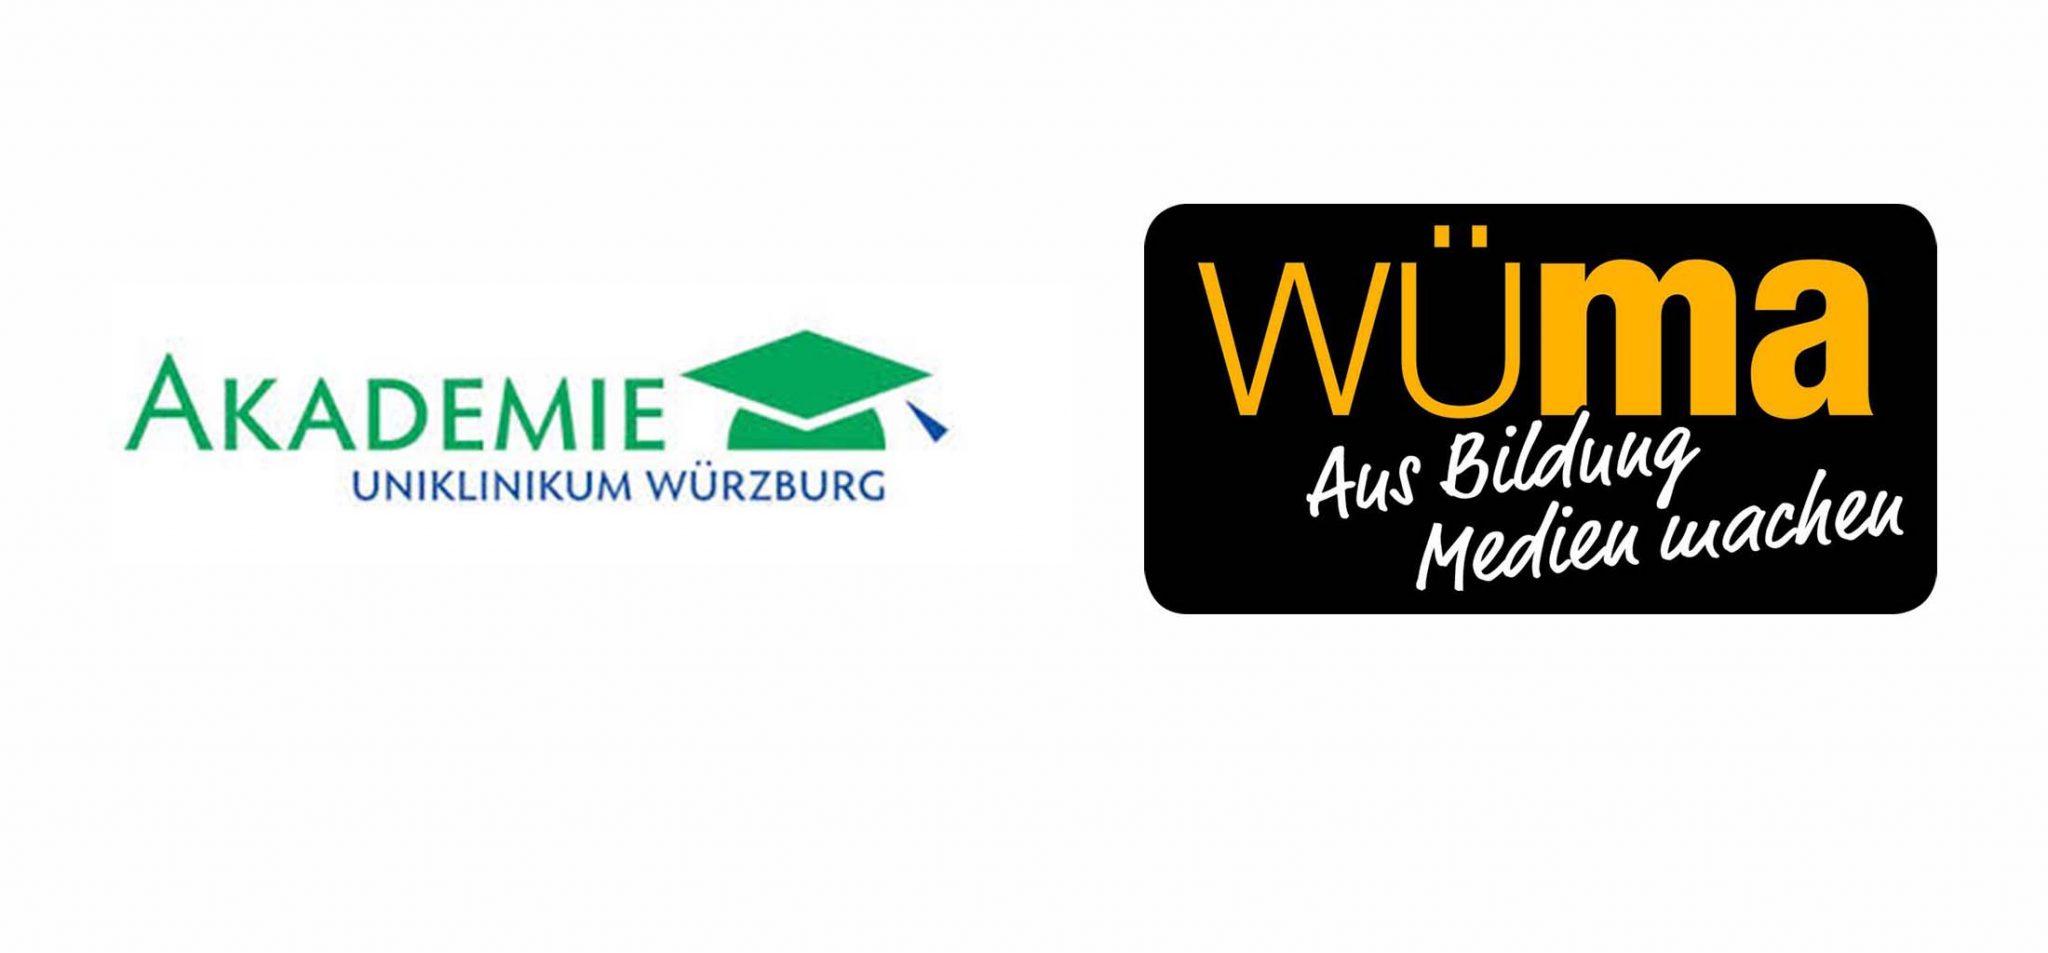 Akademie Universitätsklinikum Würzburg Würzburger Medienakademie Stellenanzeigen Textseminar Agentur Würzburg Logo